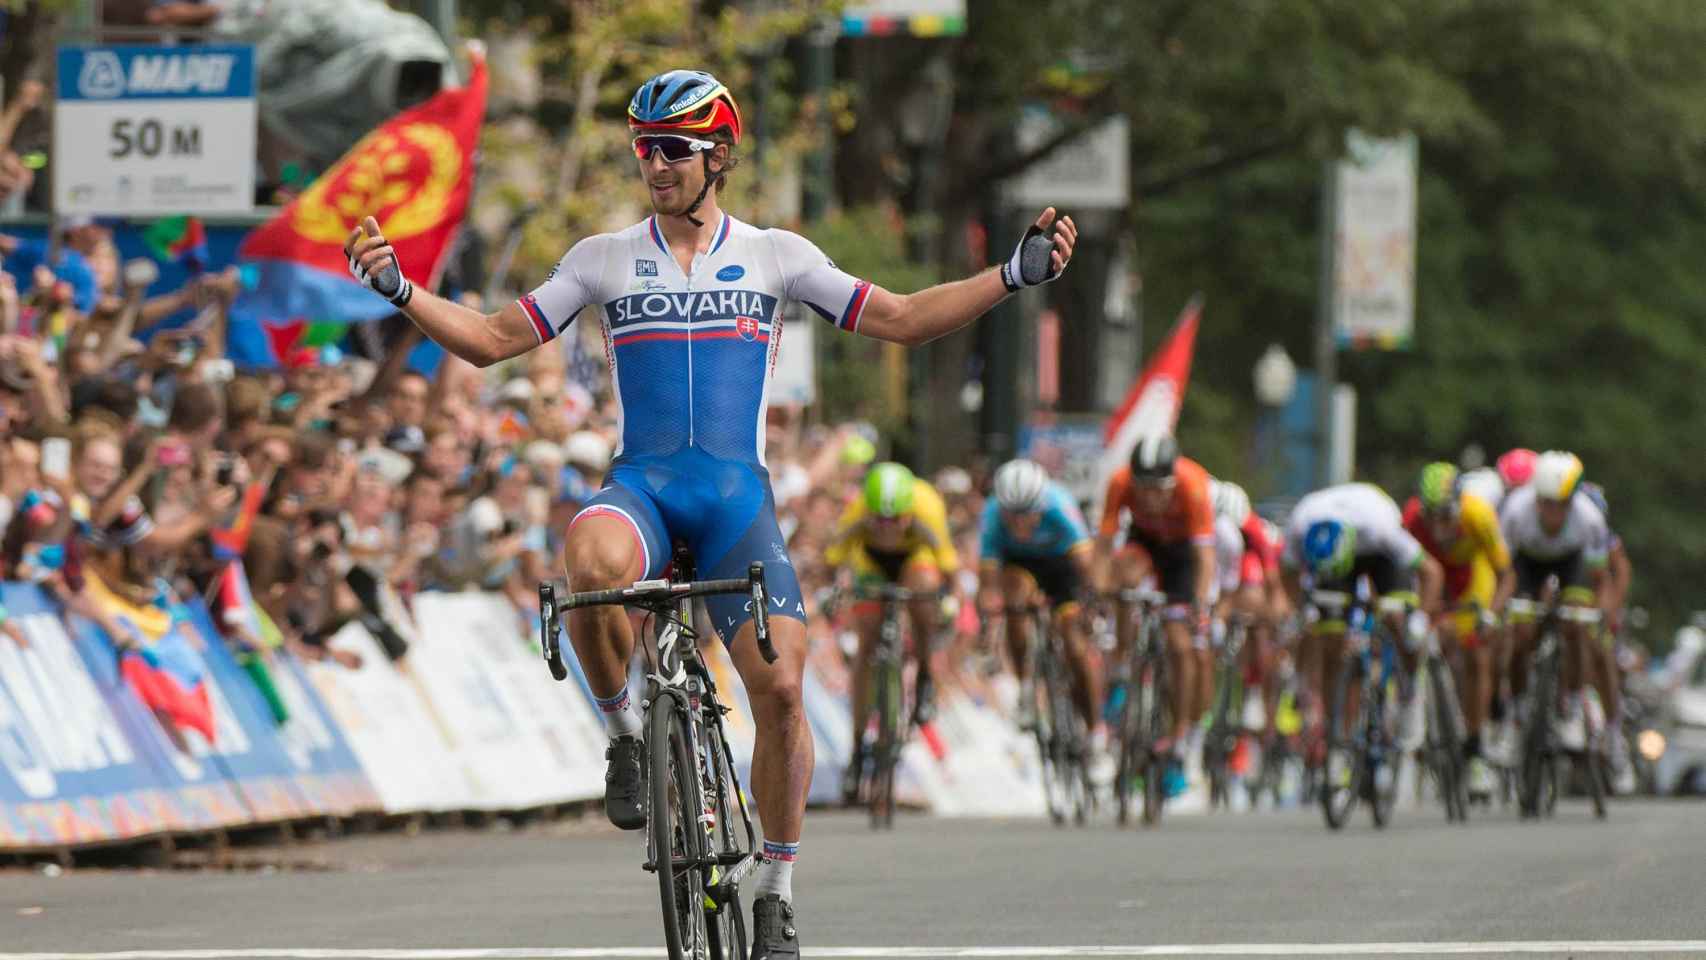 El ciclista eslovaco celebra al finalizar el campeonato.